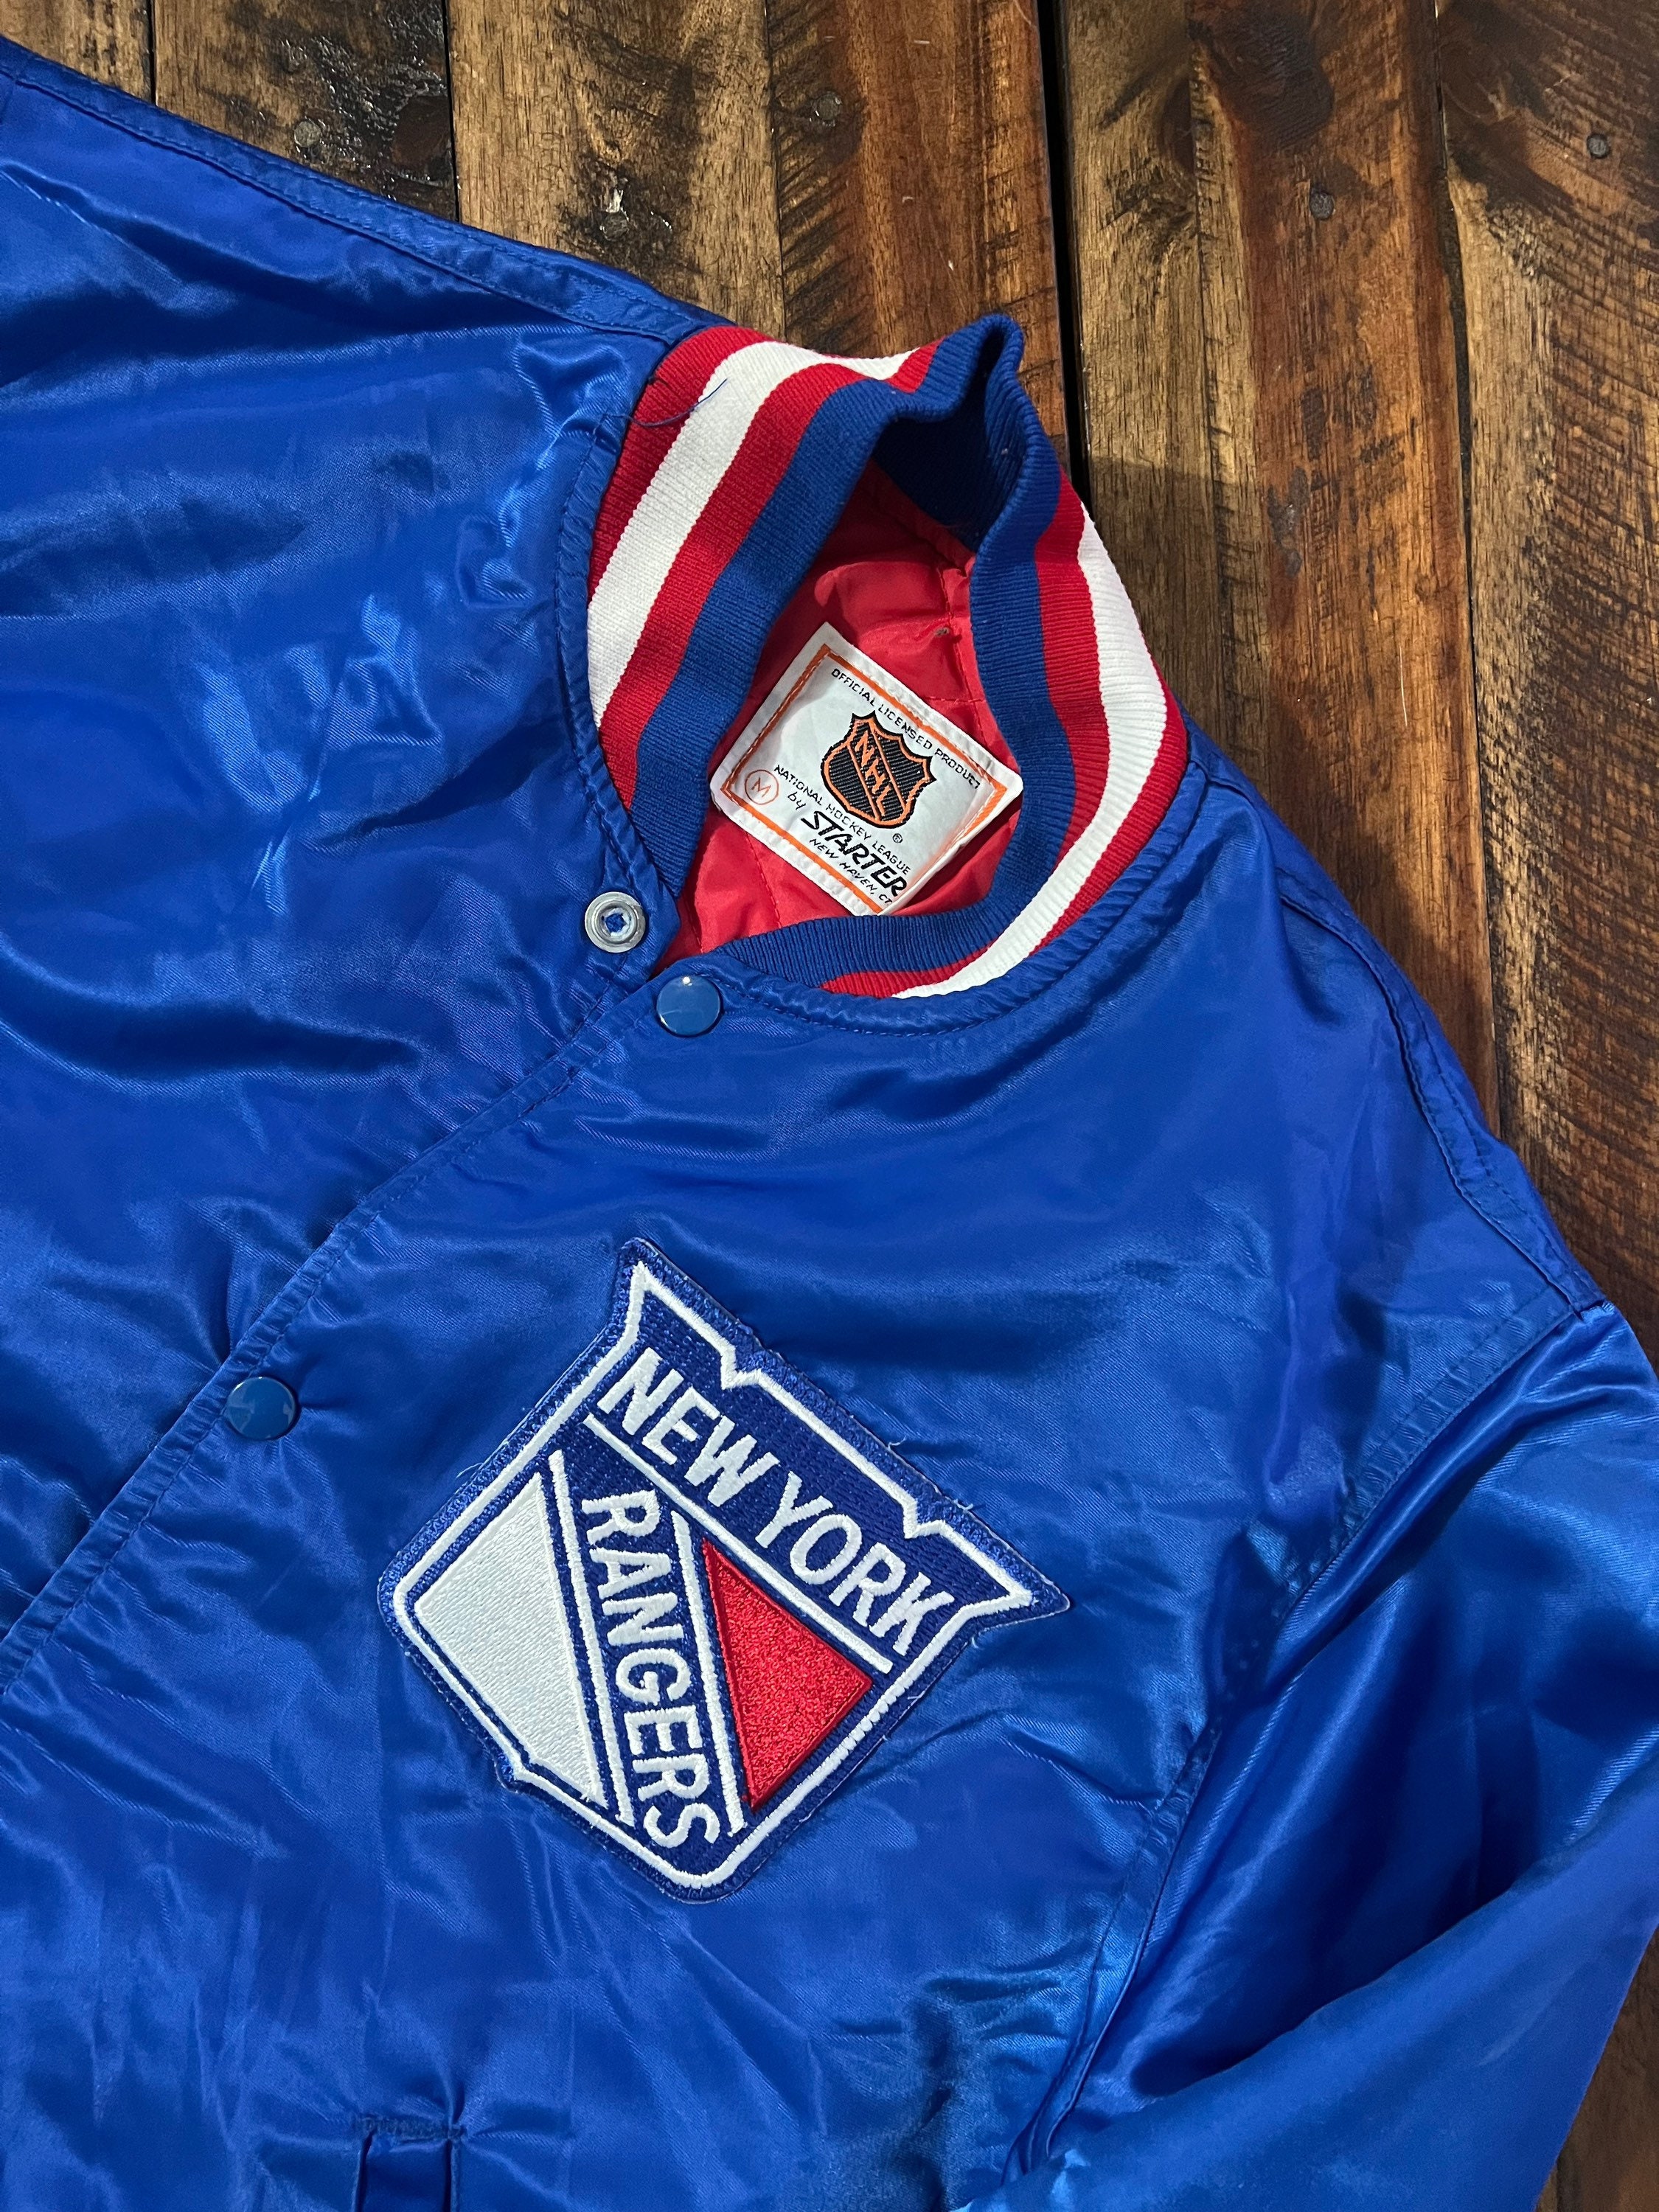 Chris Drury Jersey NHL Fan Apparel & Souvenirs for sale